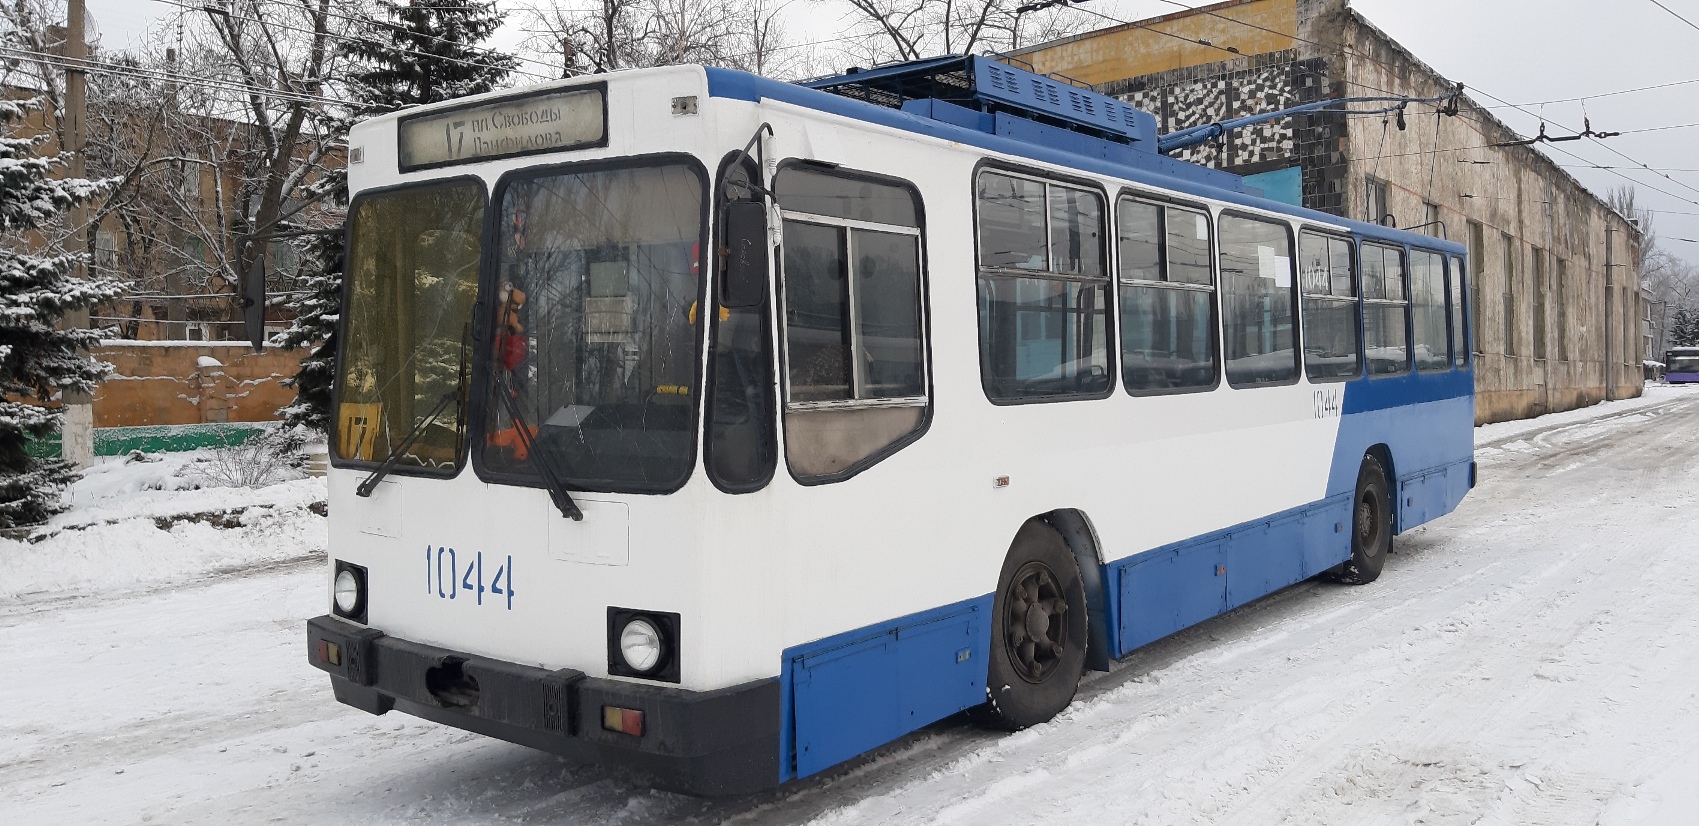 ЛАЗ е183а1. Ремонт троллейбуса. Славянск -- - твой транспорт ЛАЗ е183. Донэлектроавтотранс. Троллейбусы ремонт